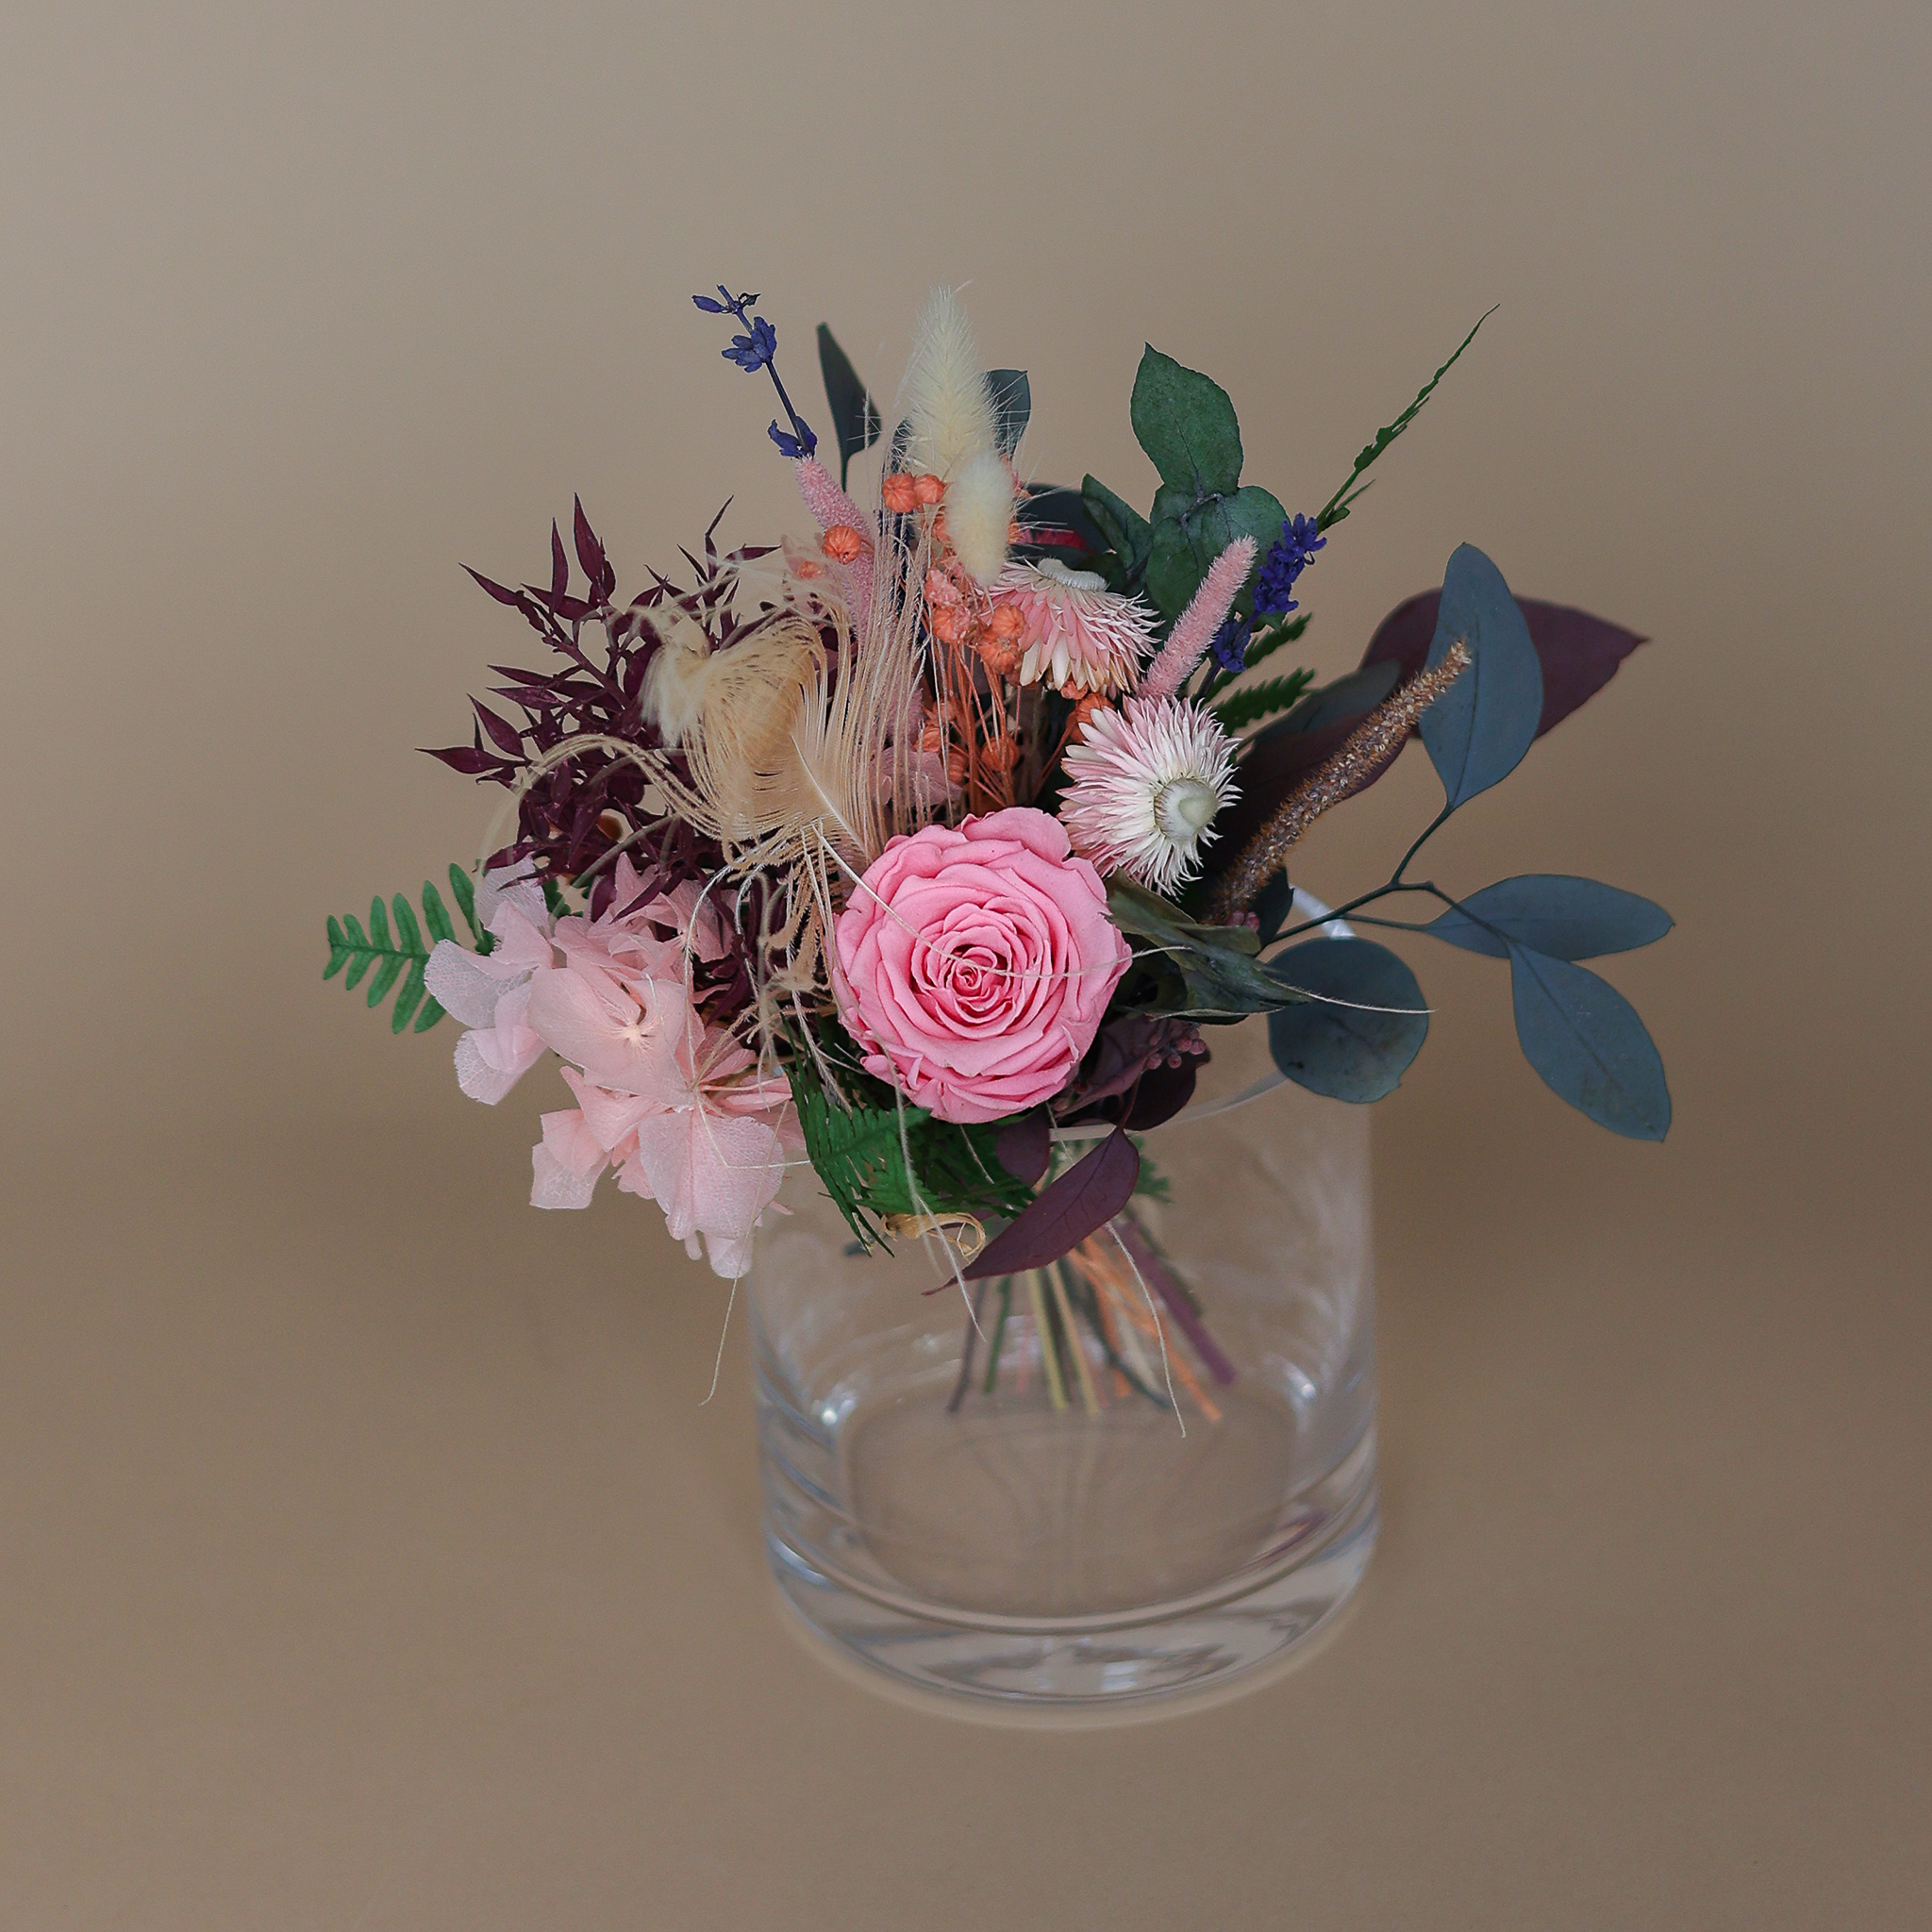 Trockenblumenstrauß "Frida" in klein mit Rose, Hortensie, Eukalyptus und Pampasgras.